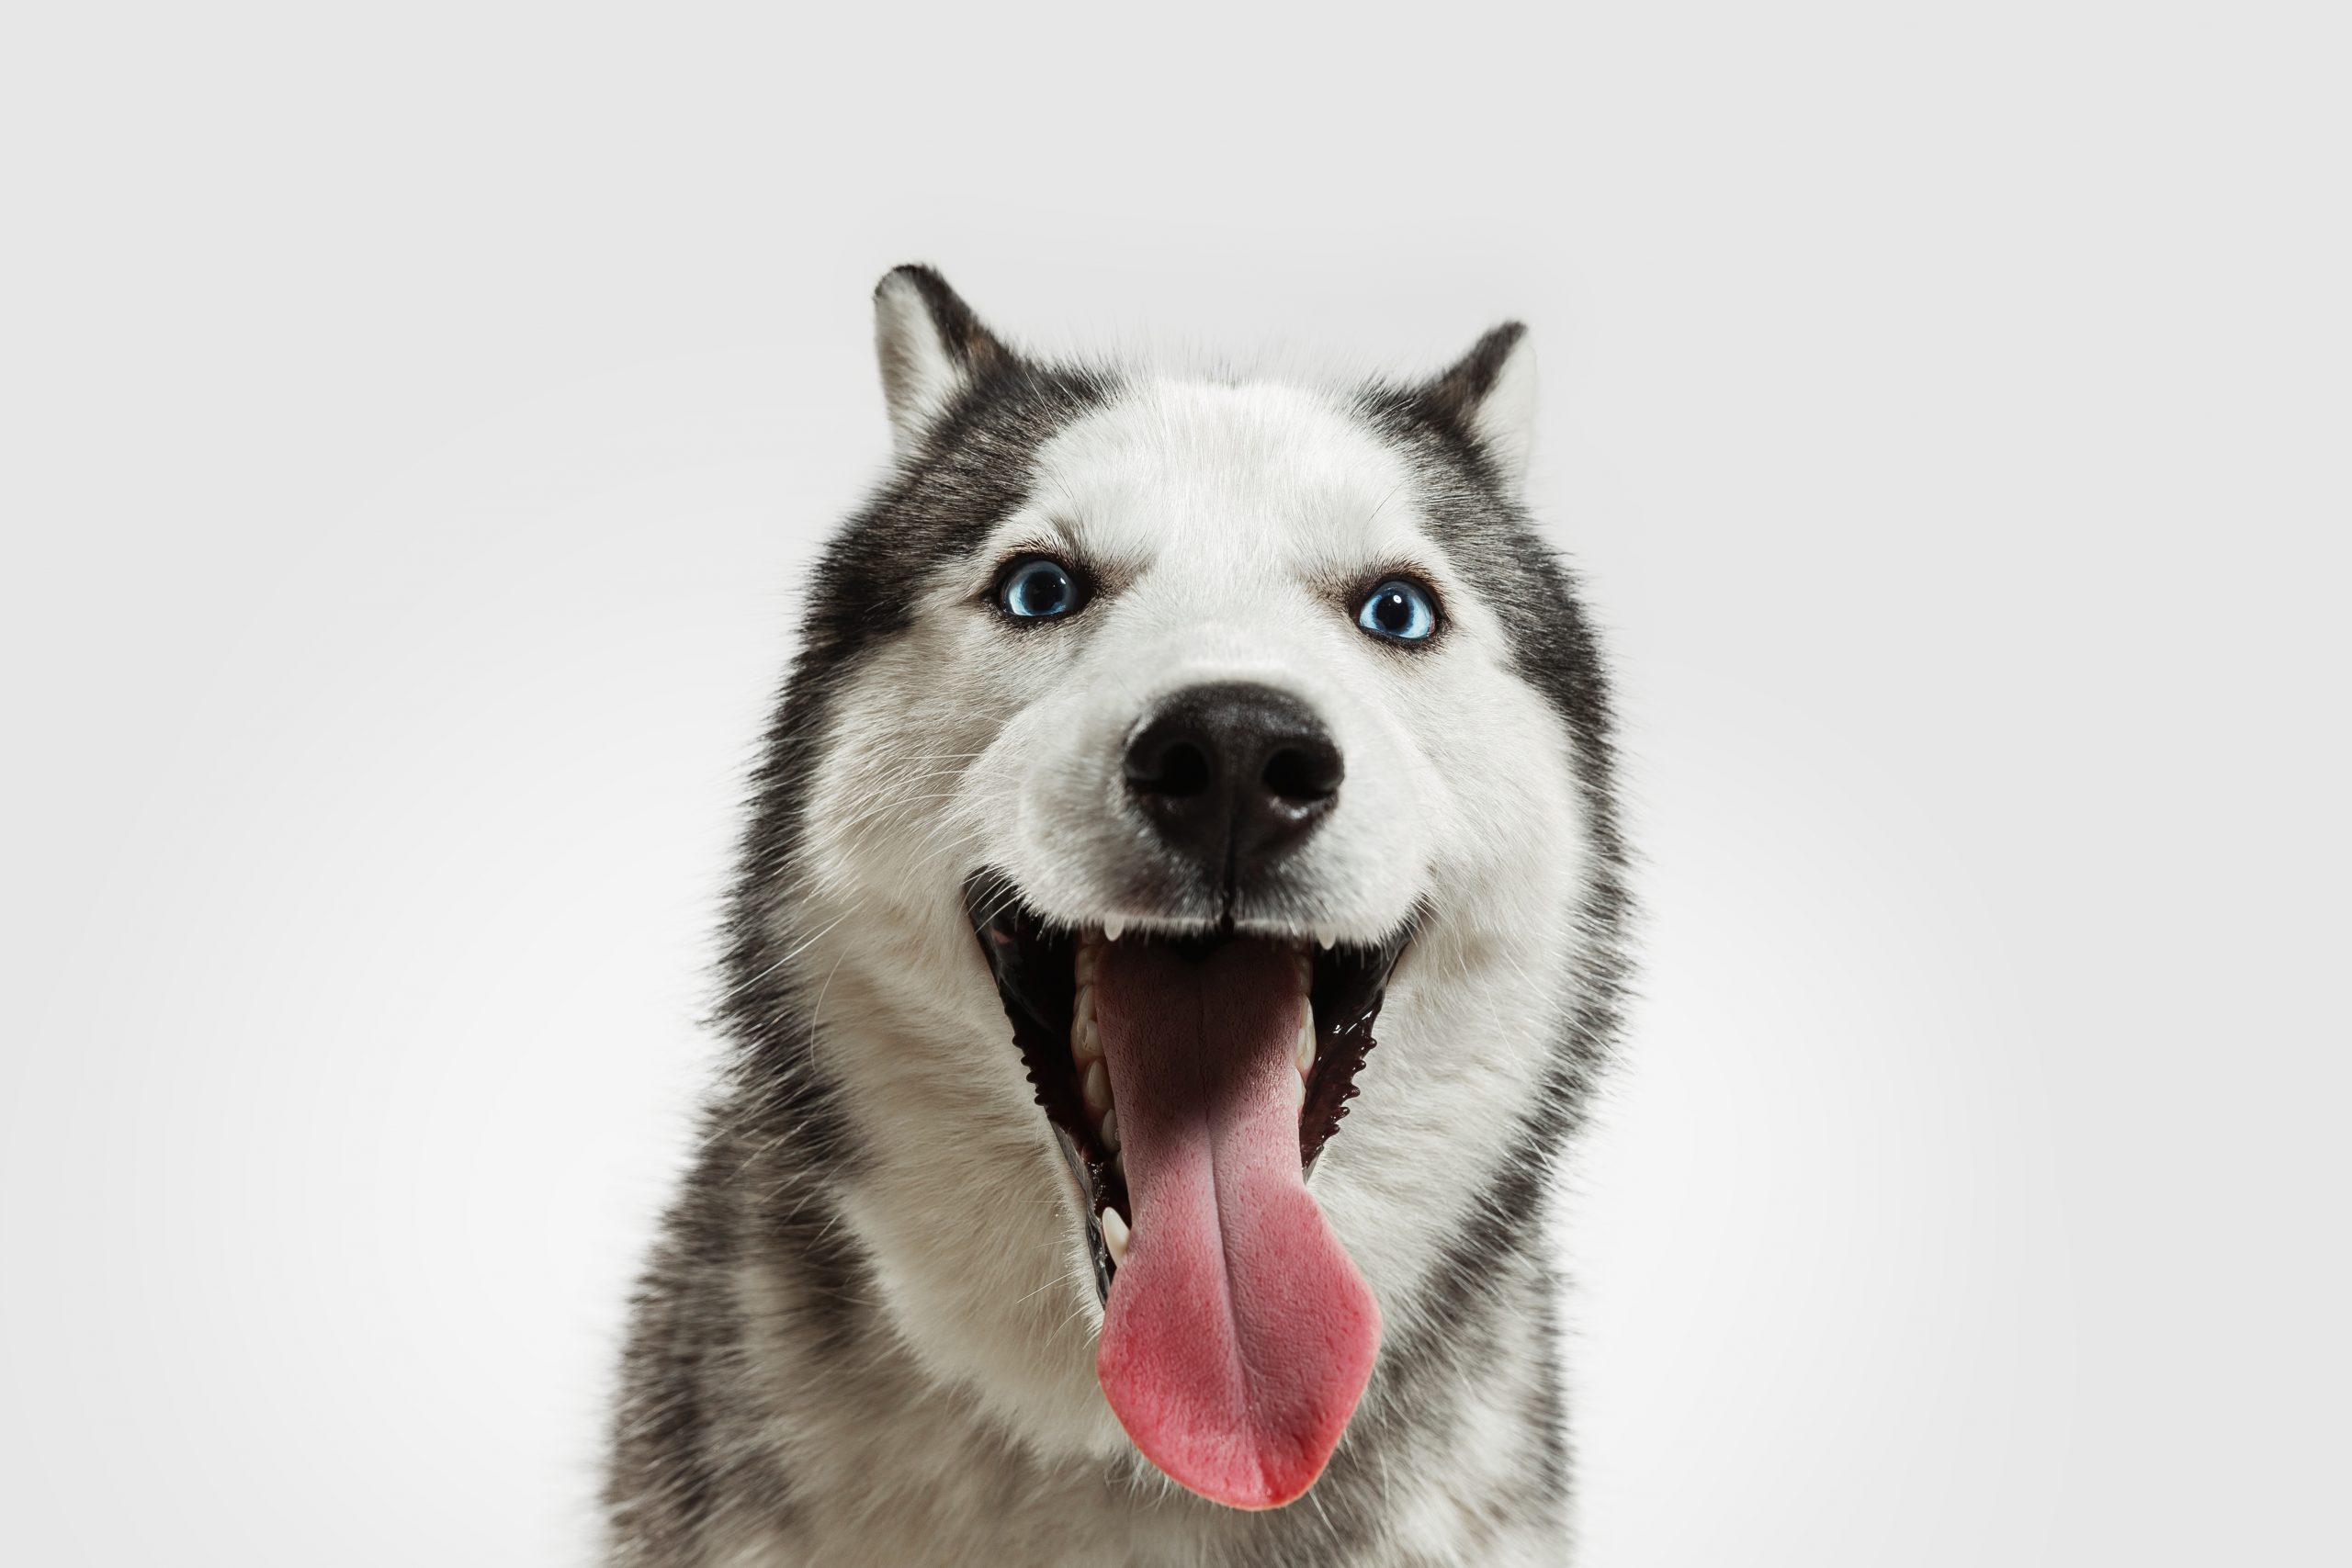 Thức ăn chó husky là gì? Hãy xem ngay các hình ảnh của những chú chó này để tìm hiểu về cách nuôi dưỡng và chăm sóc chúng.